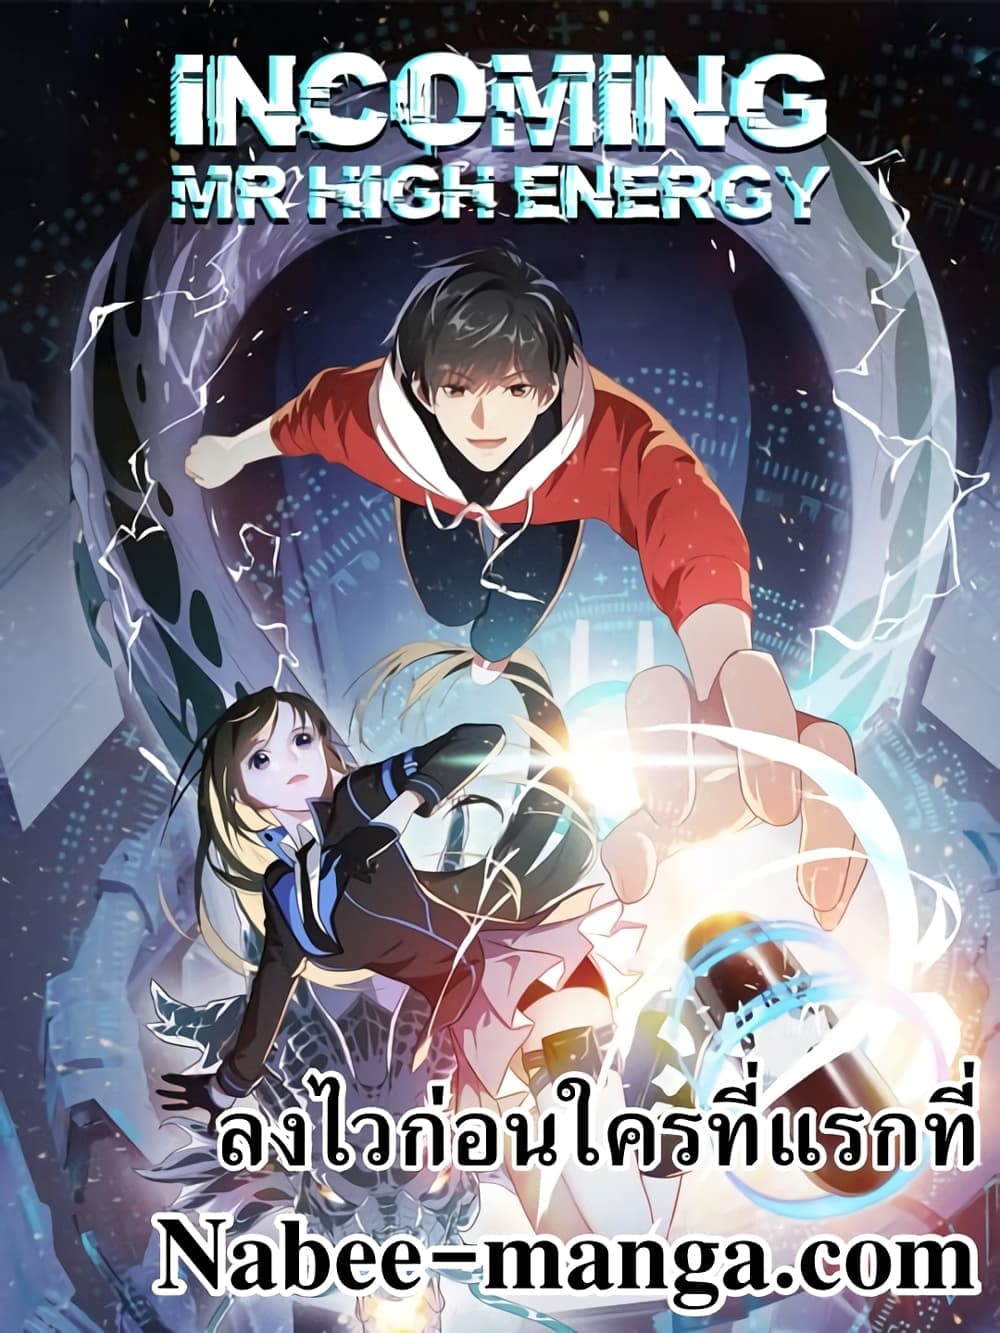 High Energy Strikes 316-316